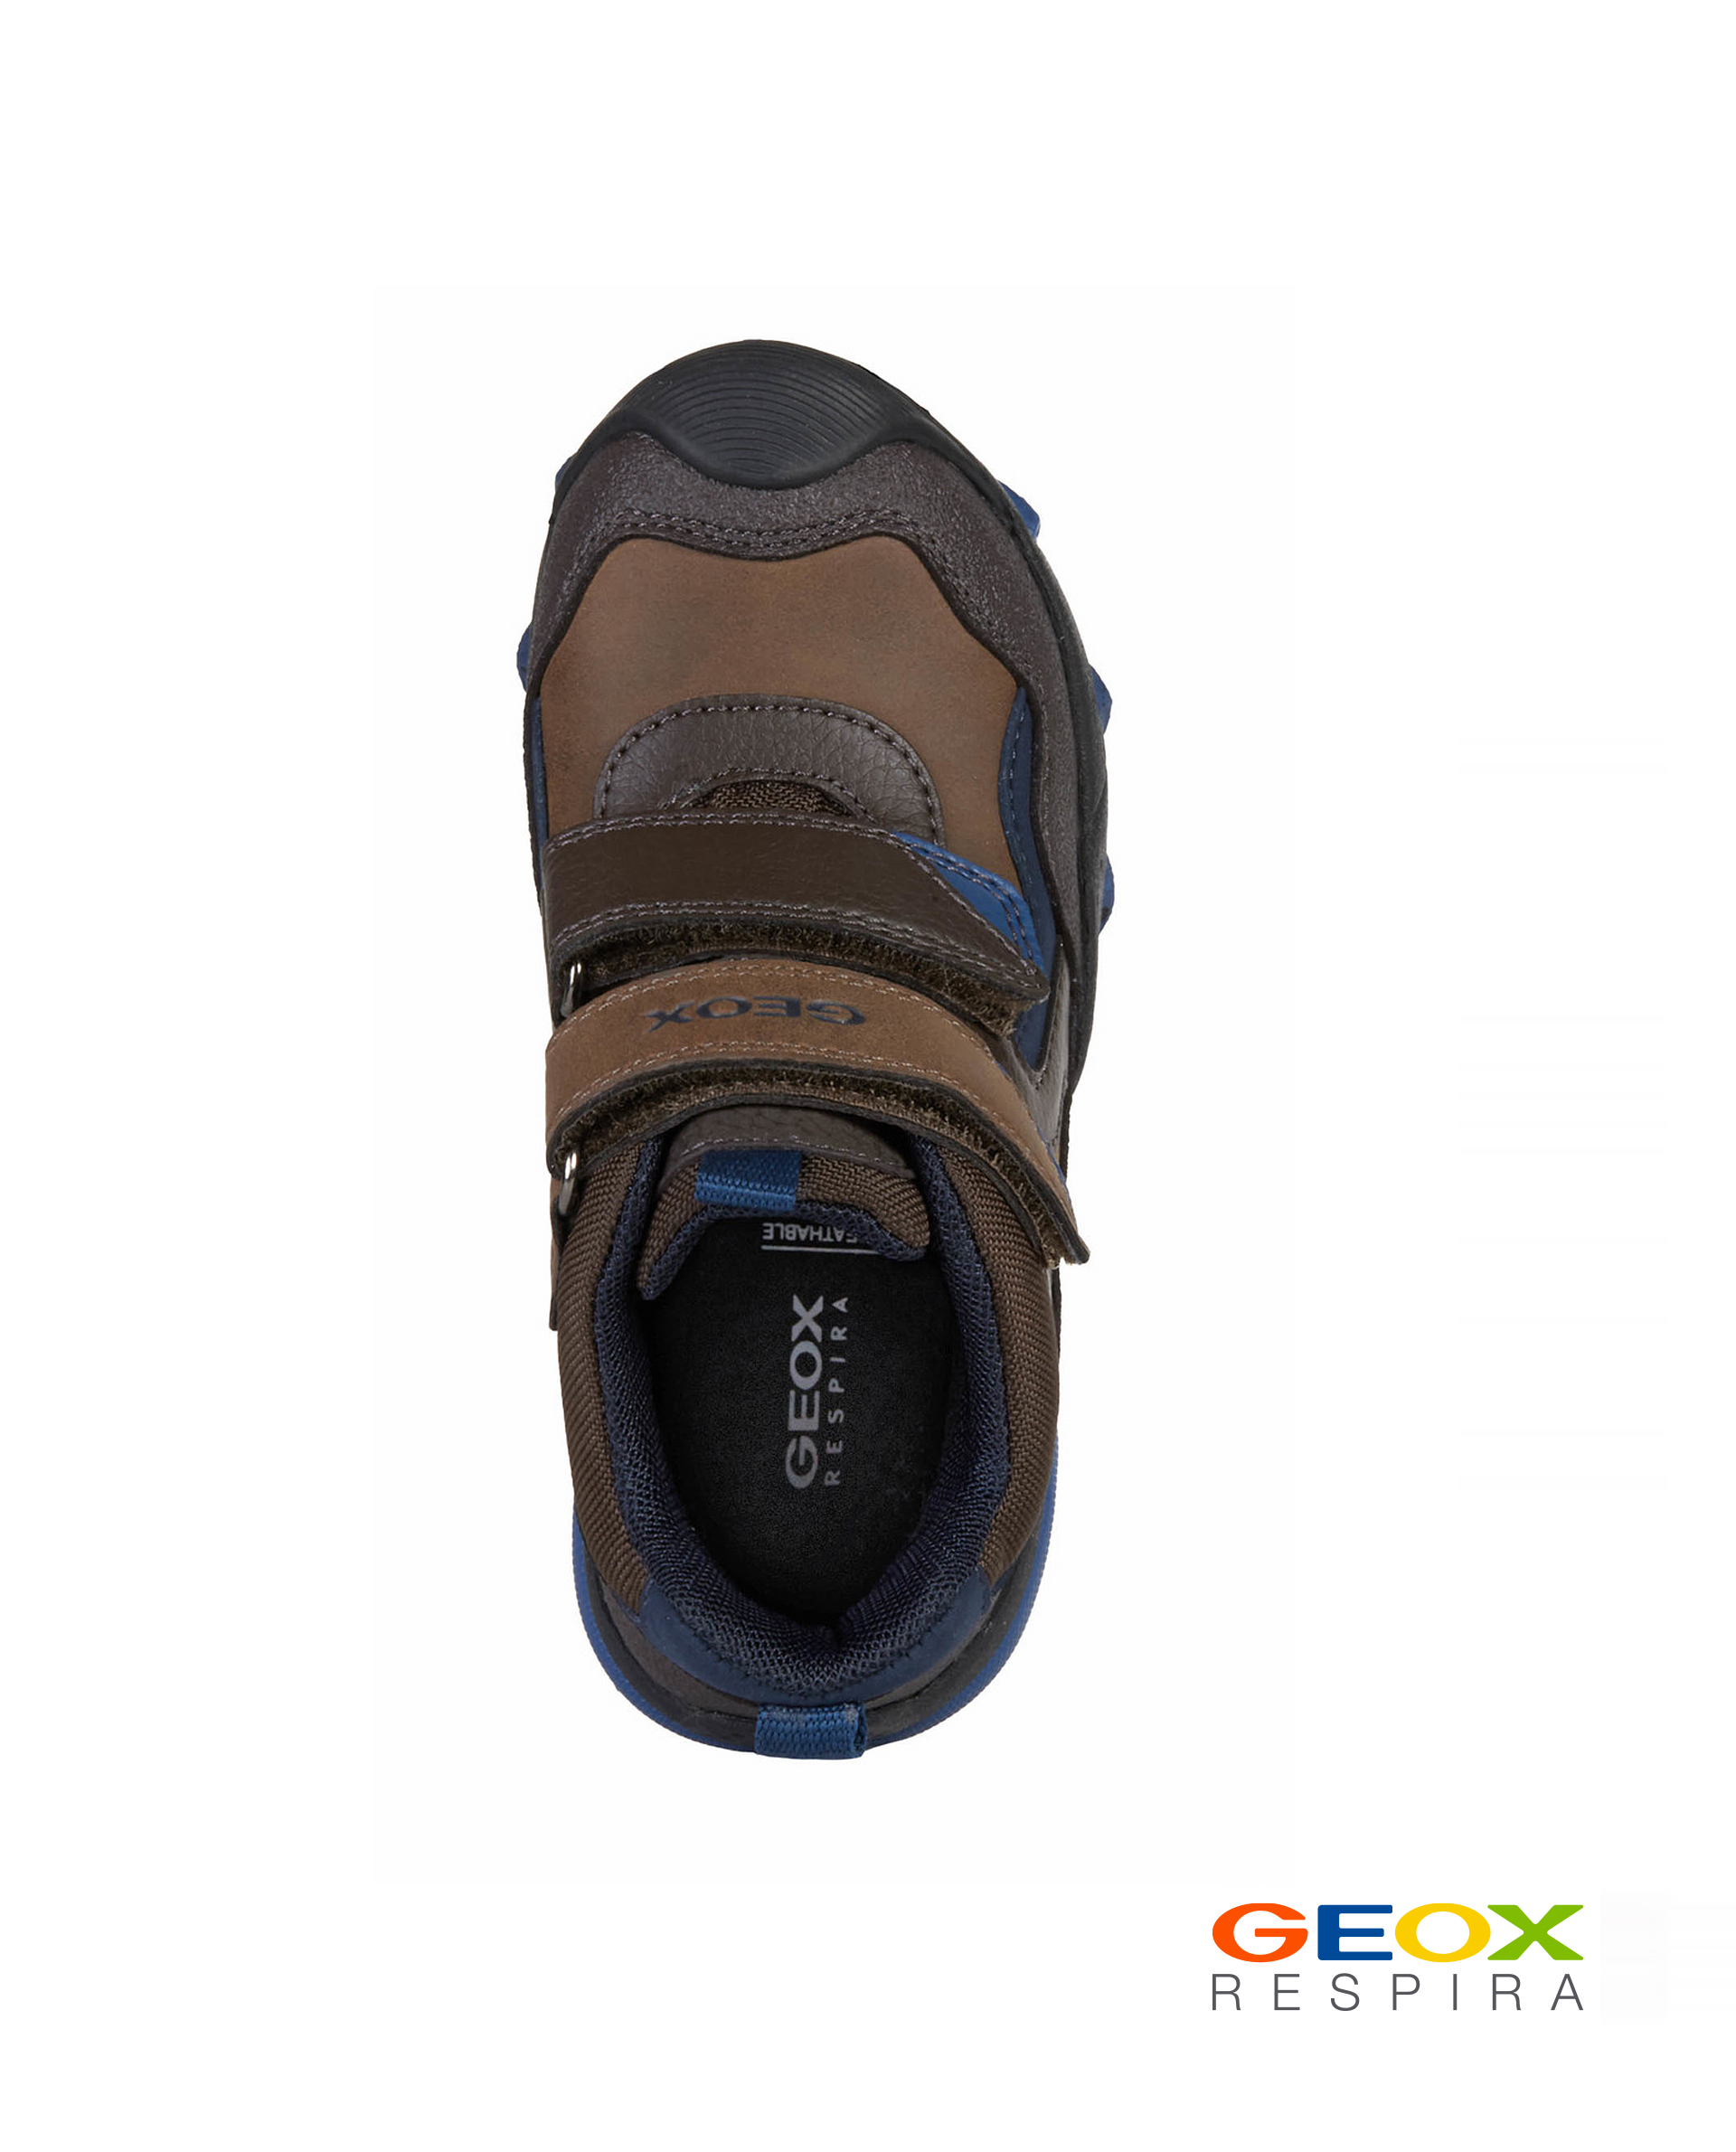 Коричневые ботинки Geox J049WBLME50C6402, размер 32, цвет коричневый - фото 4